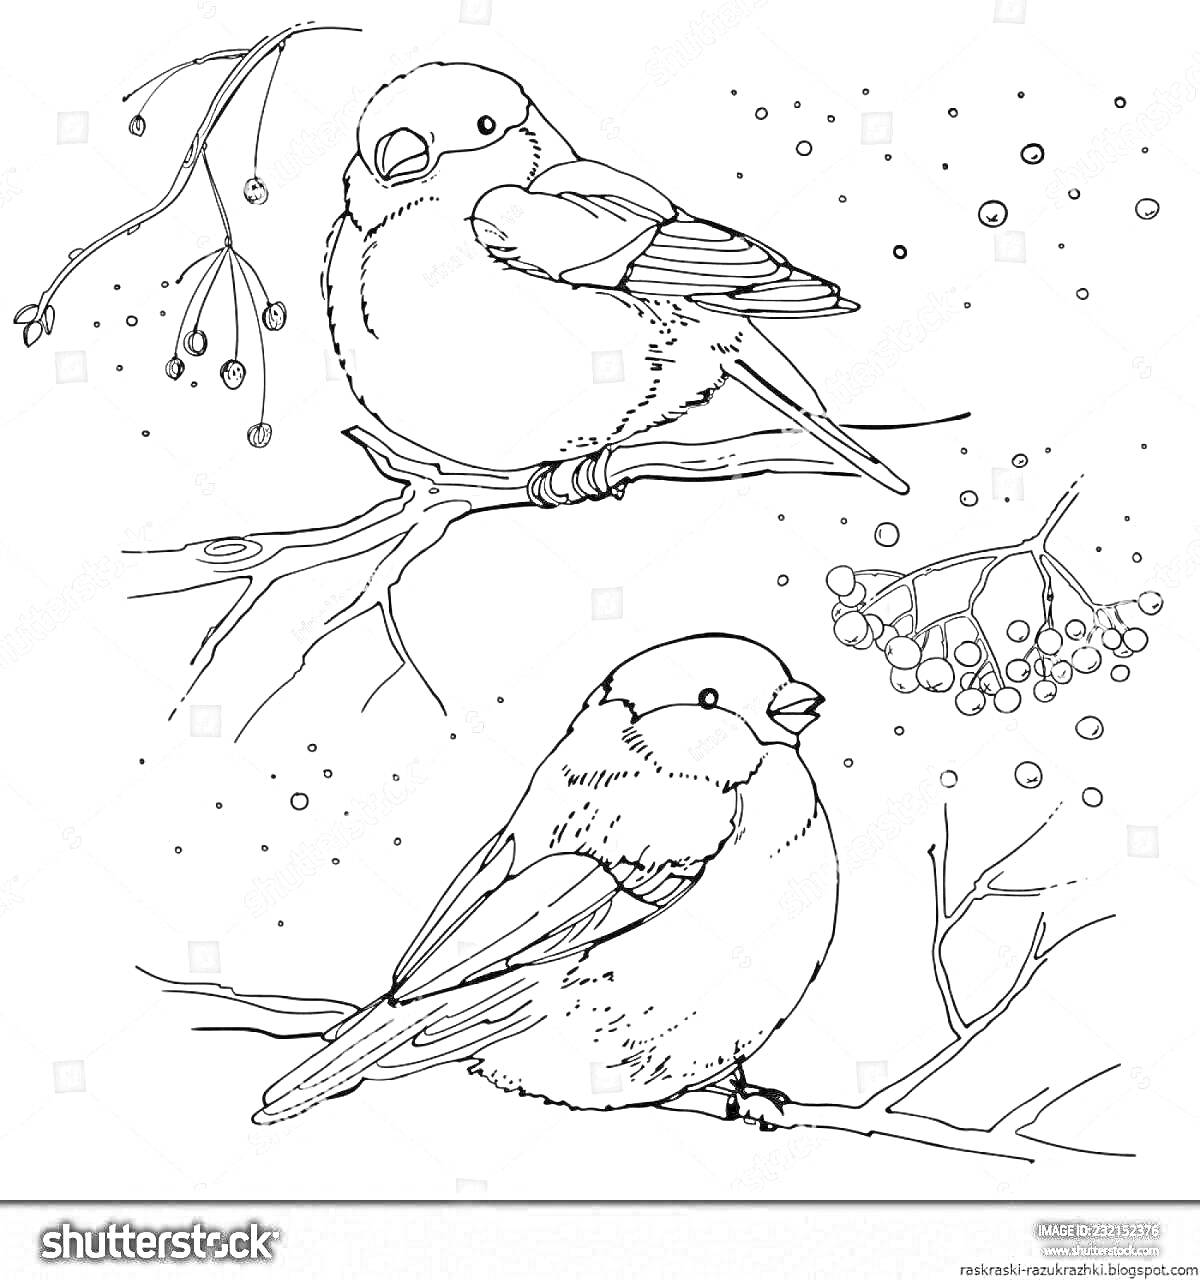 Раскраска Два снегиря на ветке с ягодами и мотивами зимнего пейзажа